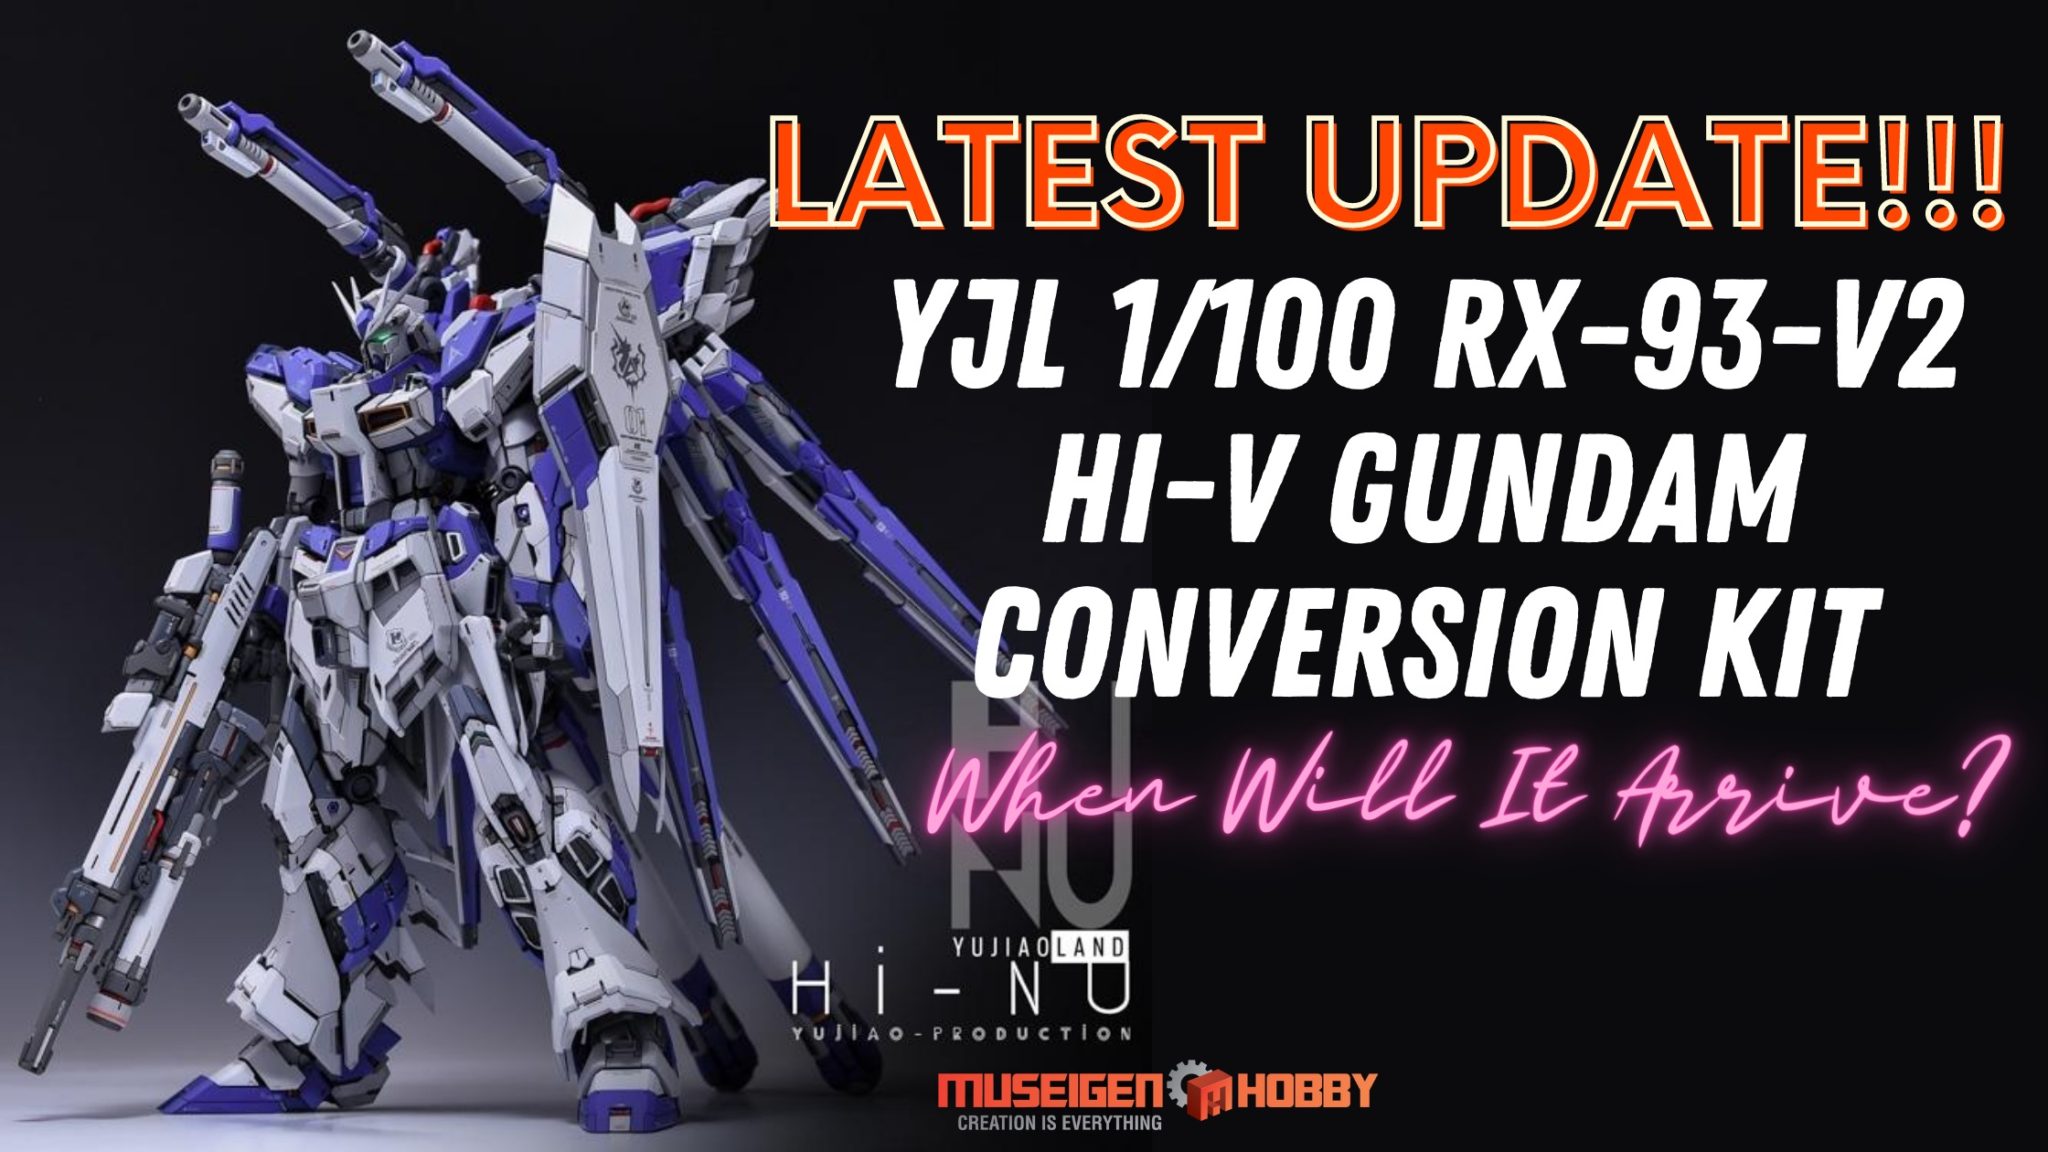 YJL 1_100 RX-93-v2 Hi-v Gundam Conversion Kit Updates